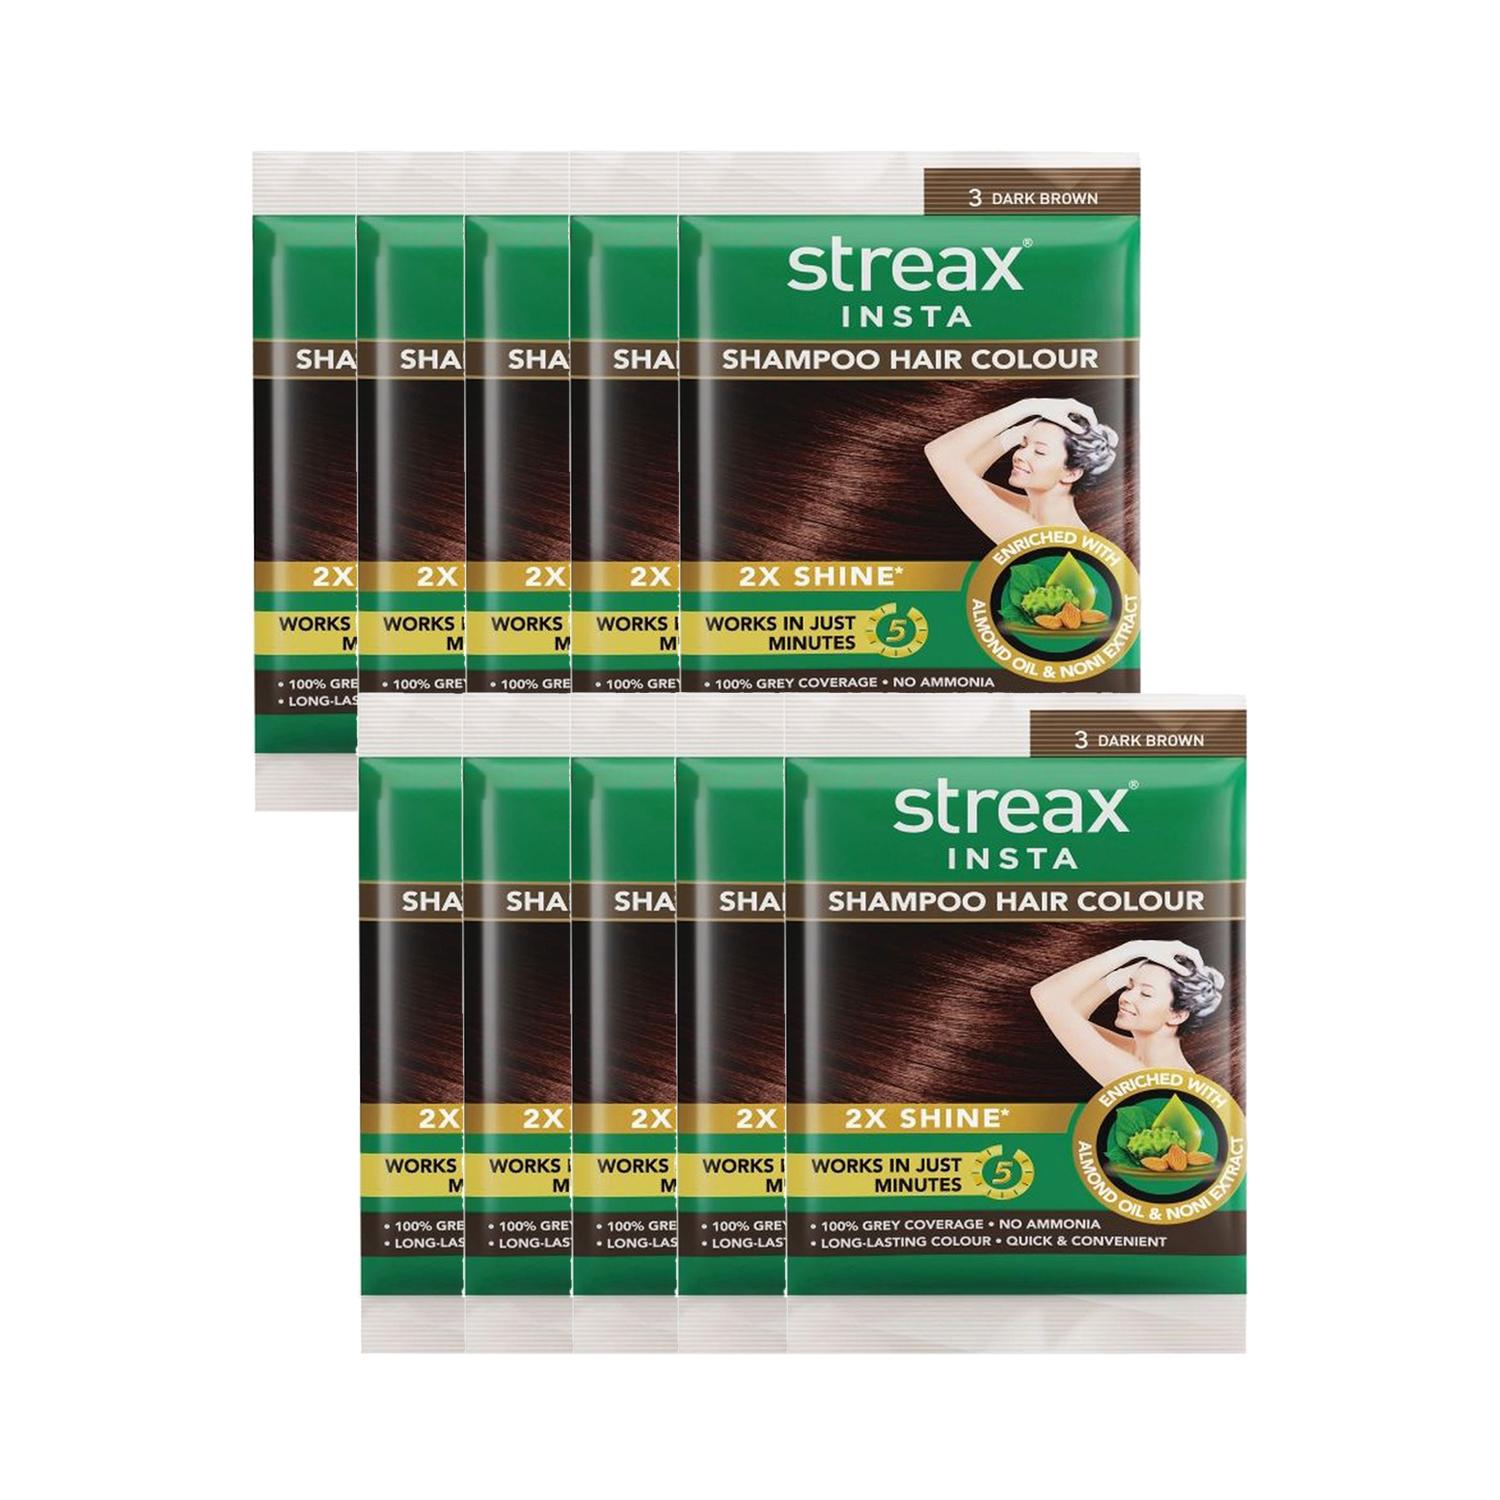 Streax | Streax Insta Shampoo Hair Colour - Dark Brown (18ml) (Pack of 10) Combo